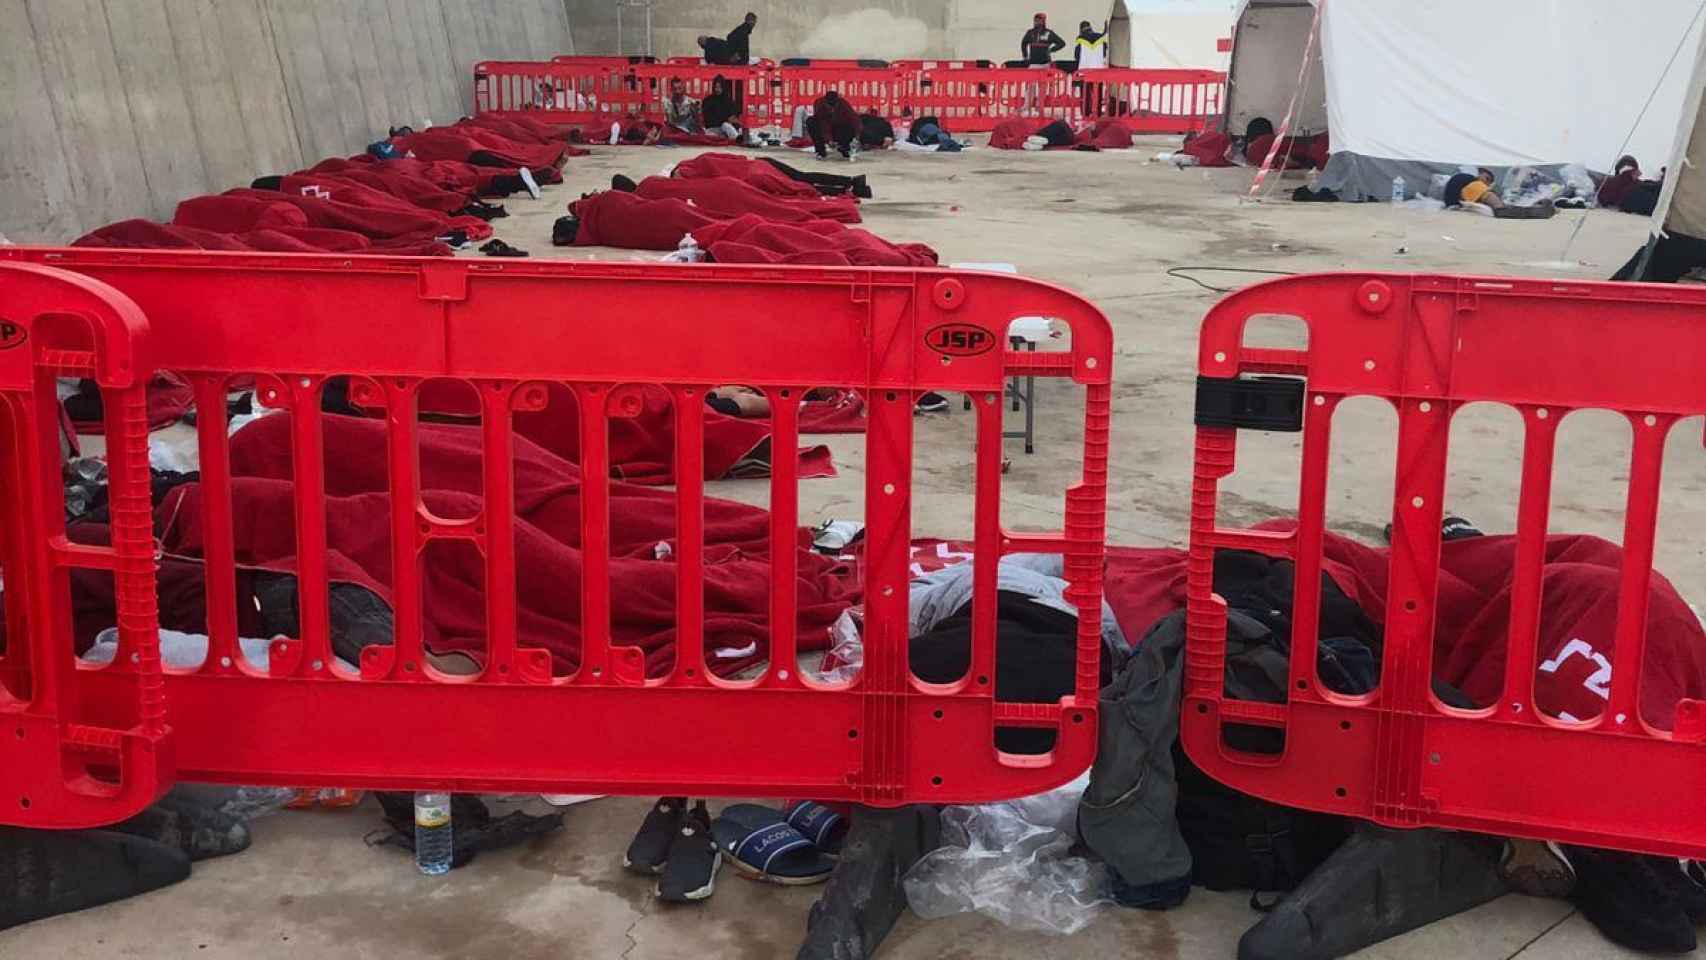 Decenas de inmigrantes argelinos durmiendo pegados en el suelo pese a los riesgos de contagios por Covid.